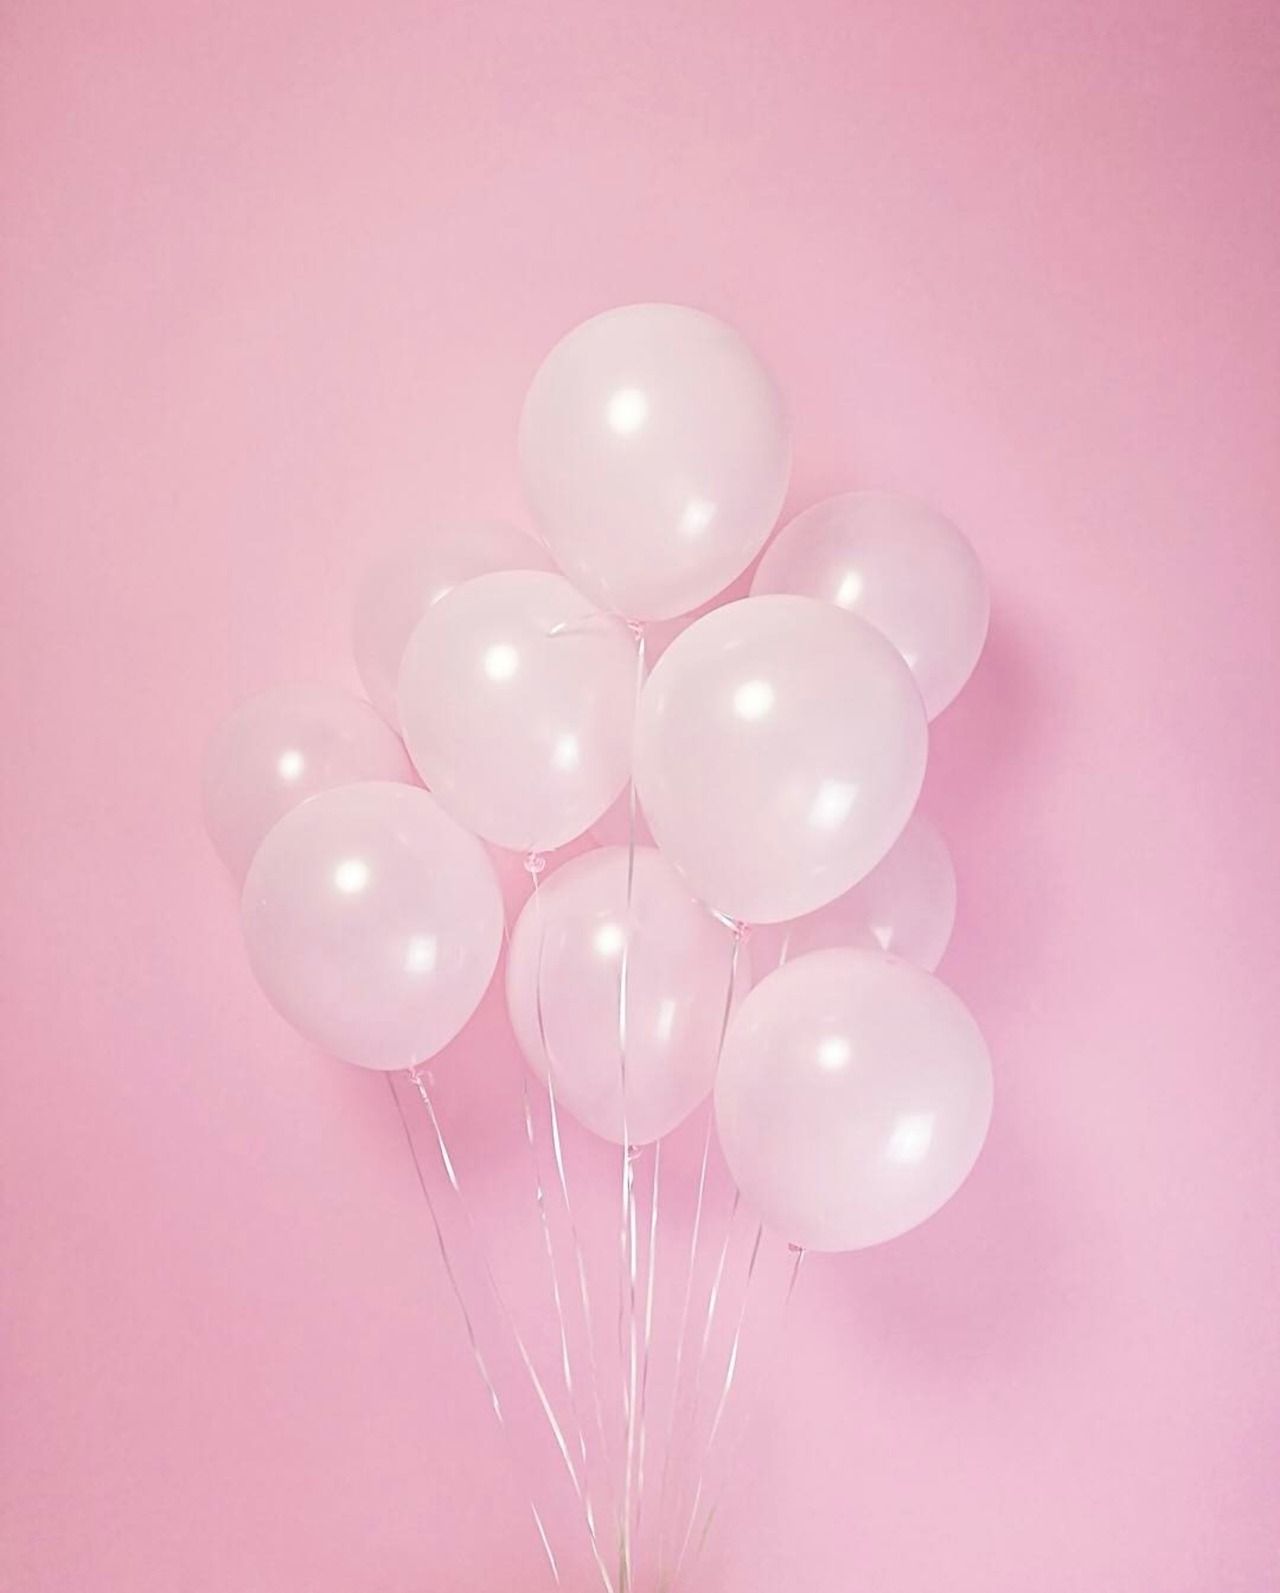  Luftballons Hintergrundbild 1280x1593. pastelpink #pastel #pink #balloons #aesthetic. Pink tumblr aesthetic, Pastel pink aesthetic, Pink aesthetic